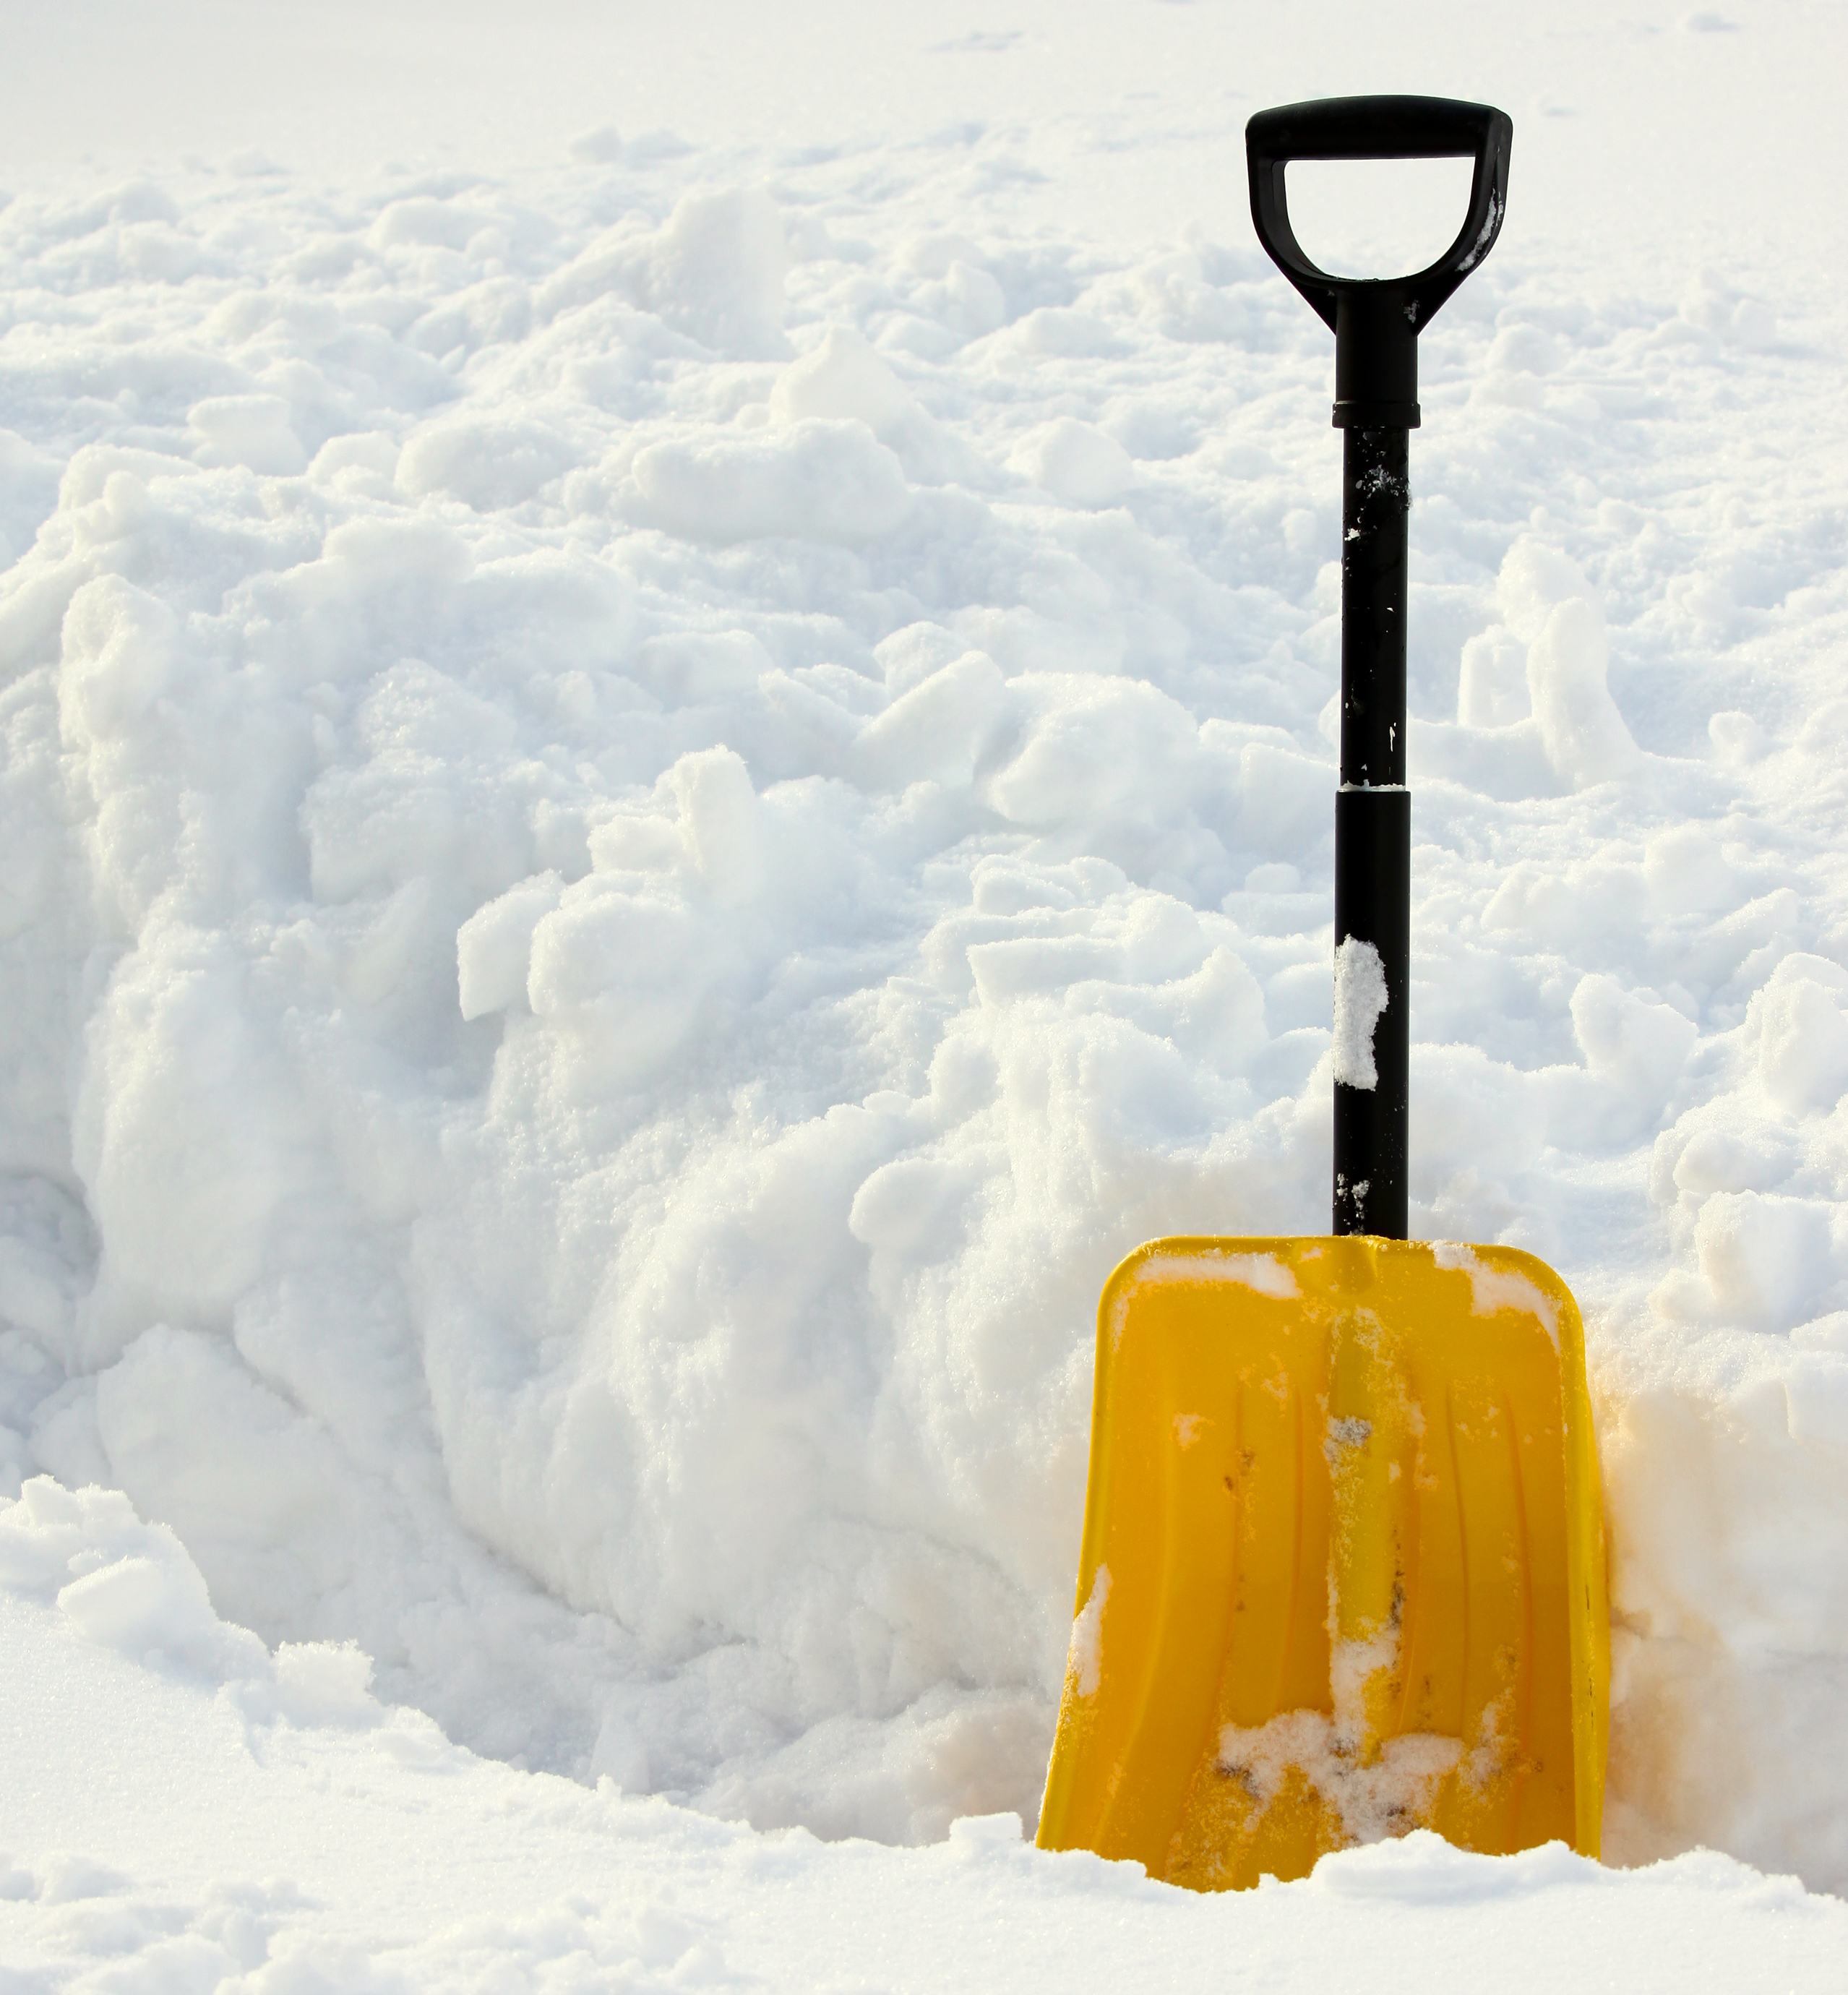 Snow shovel pictures